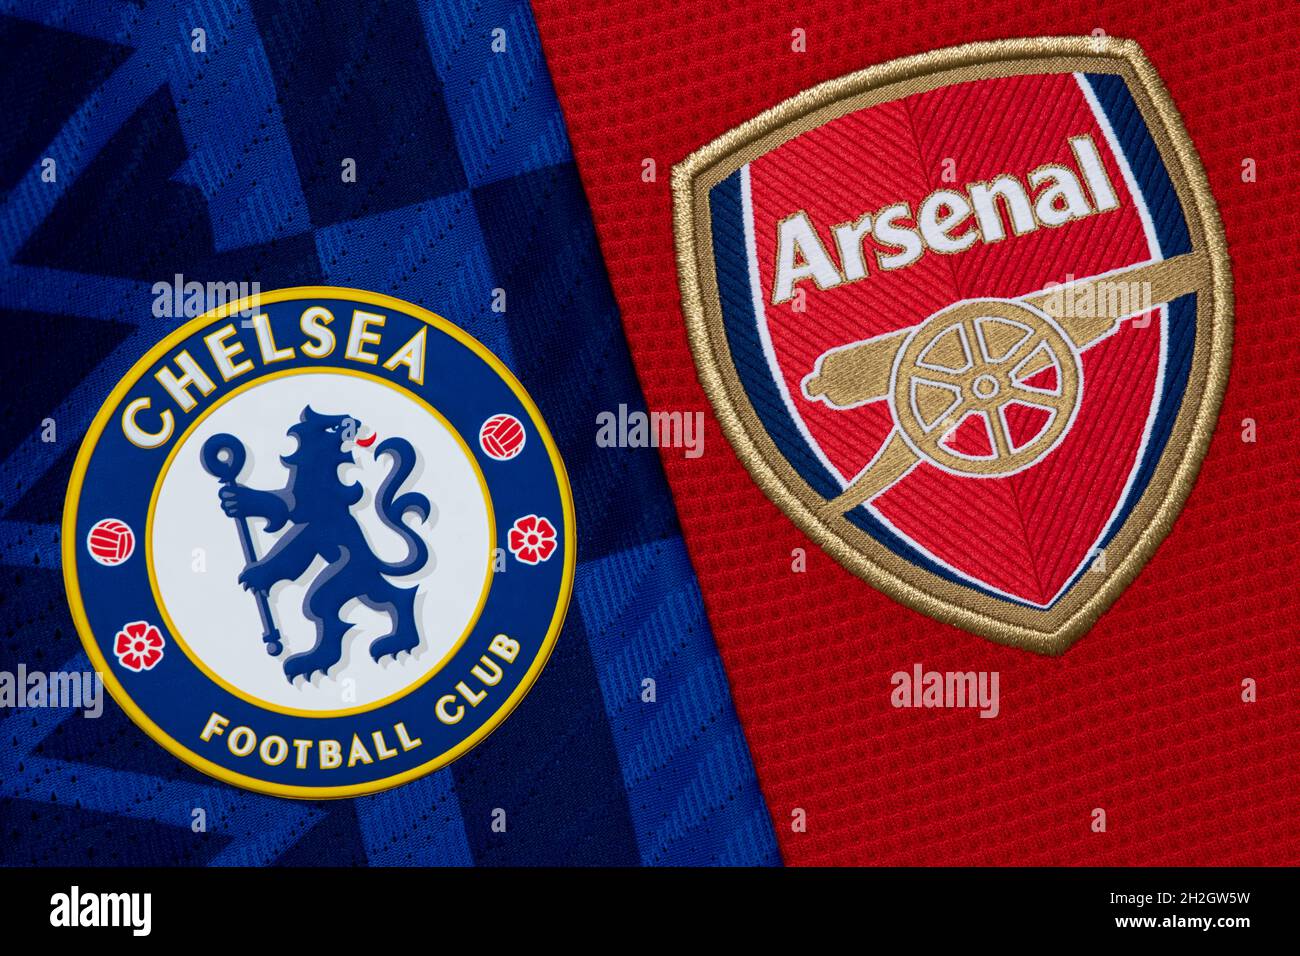 Nahaufnahme des Vereinswappens von Chelsea und Arsenal. Stockfoto